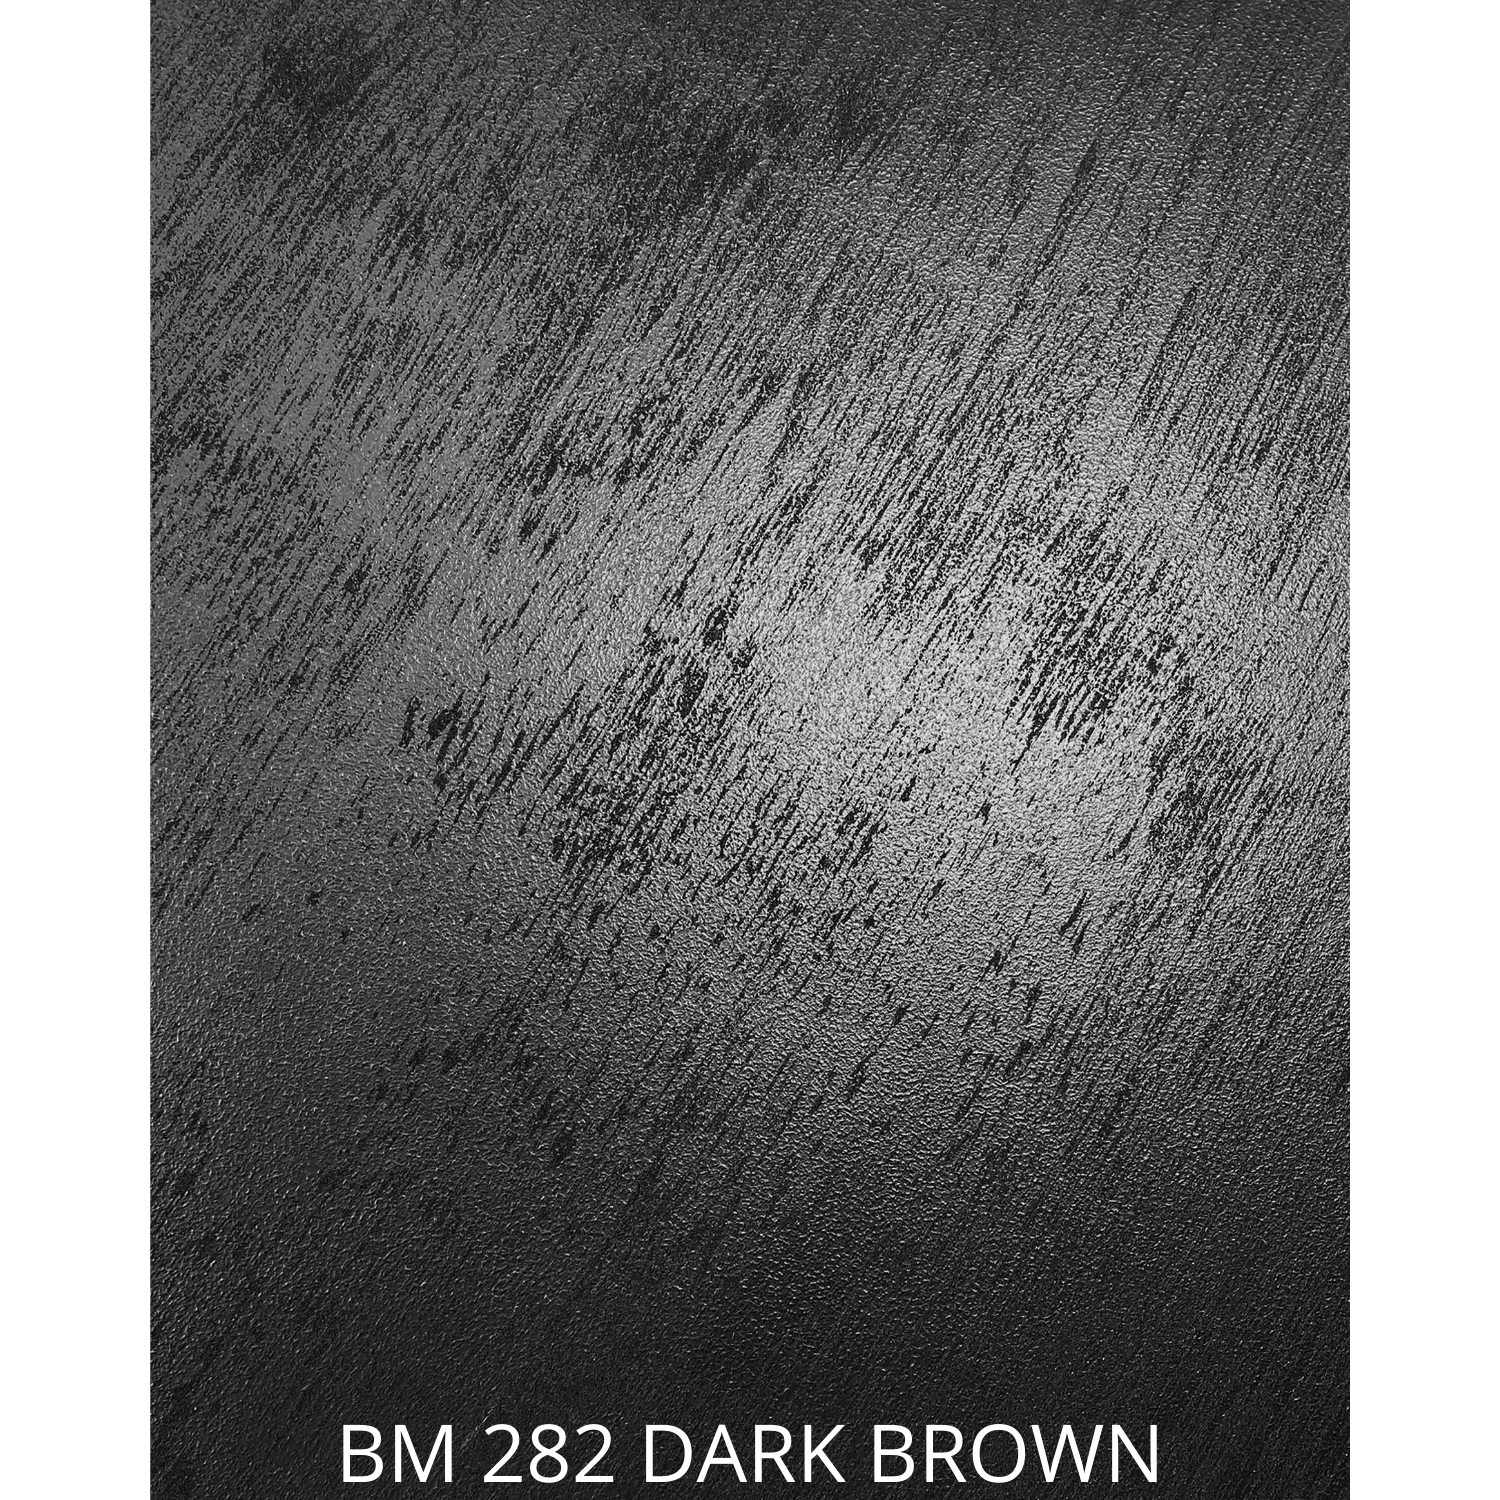 BM 262 MARBLE BROWN